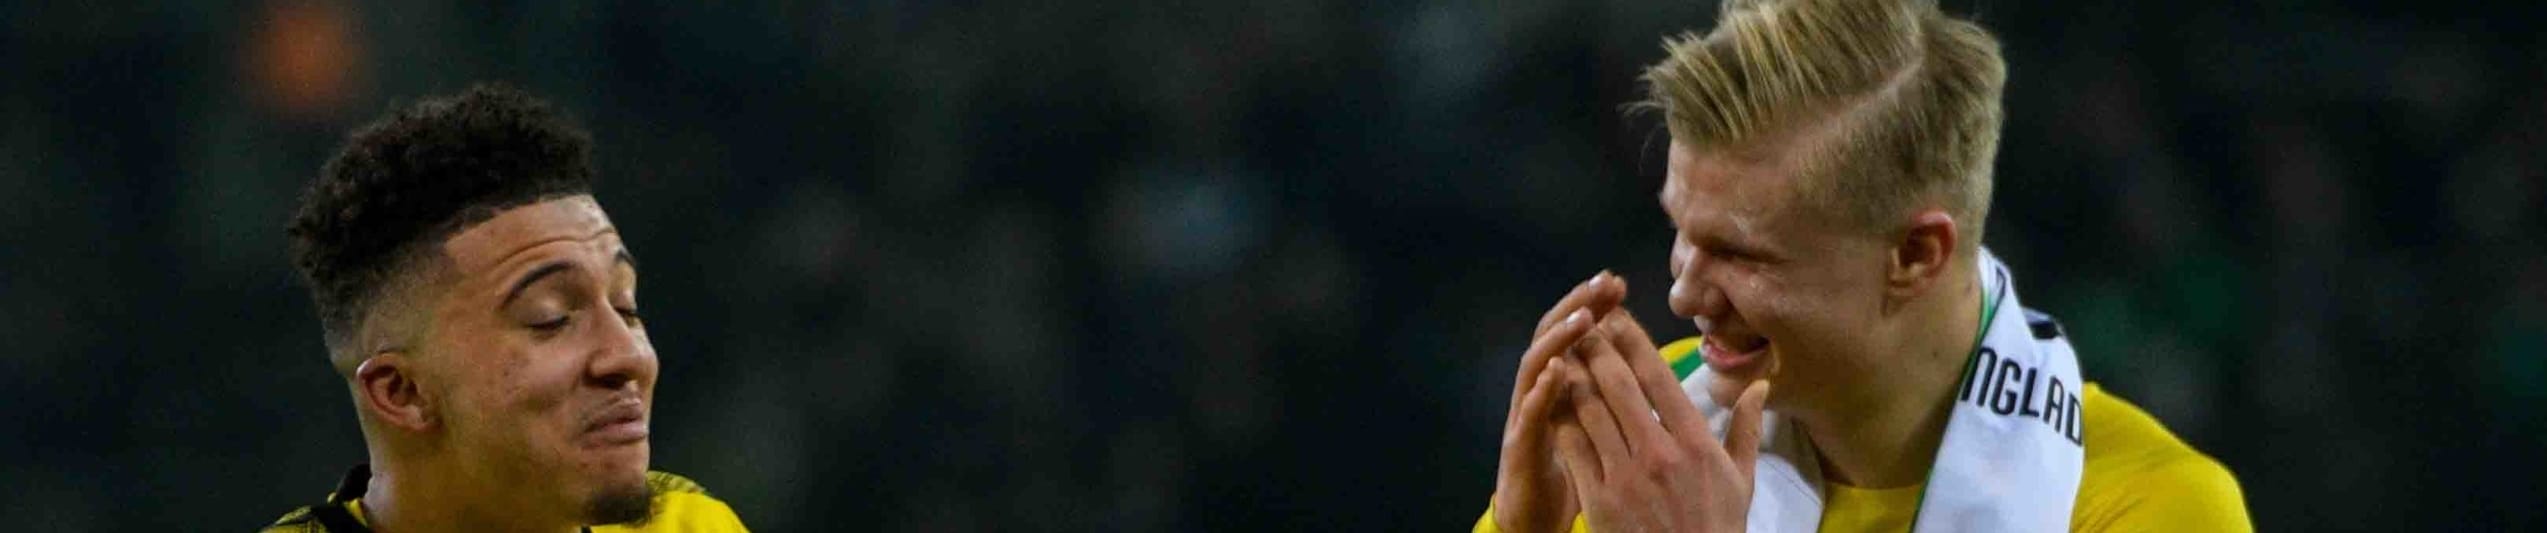 Quote Borussia Dortmund-Schalke 04: riparte la caccia al Meisterschale